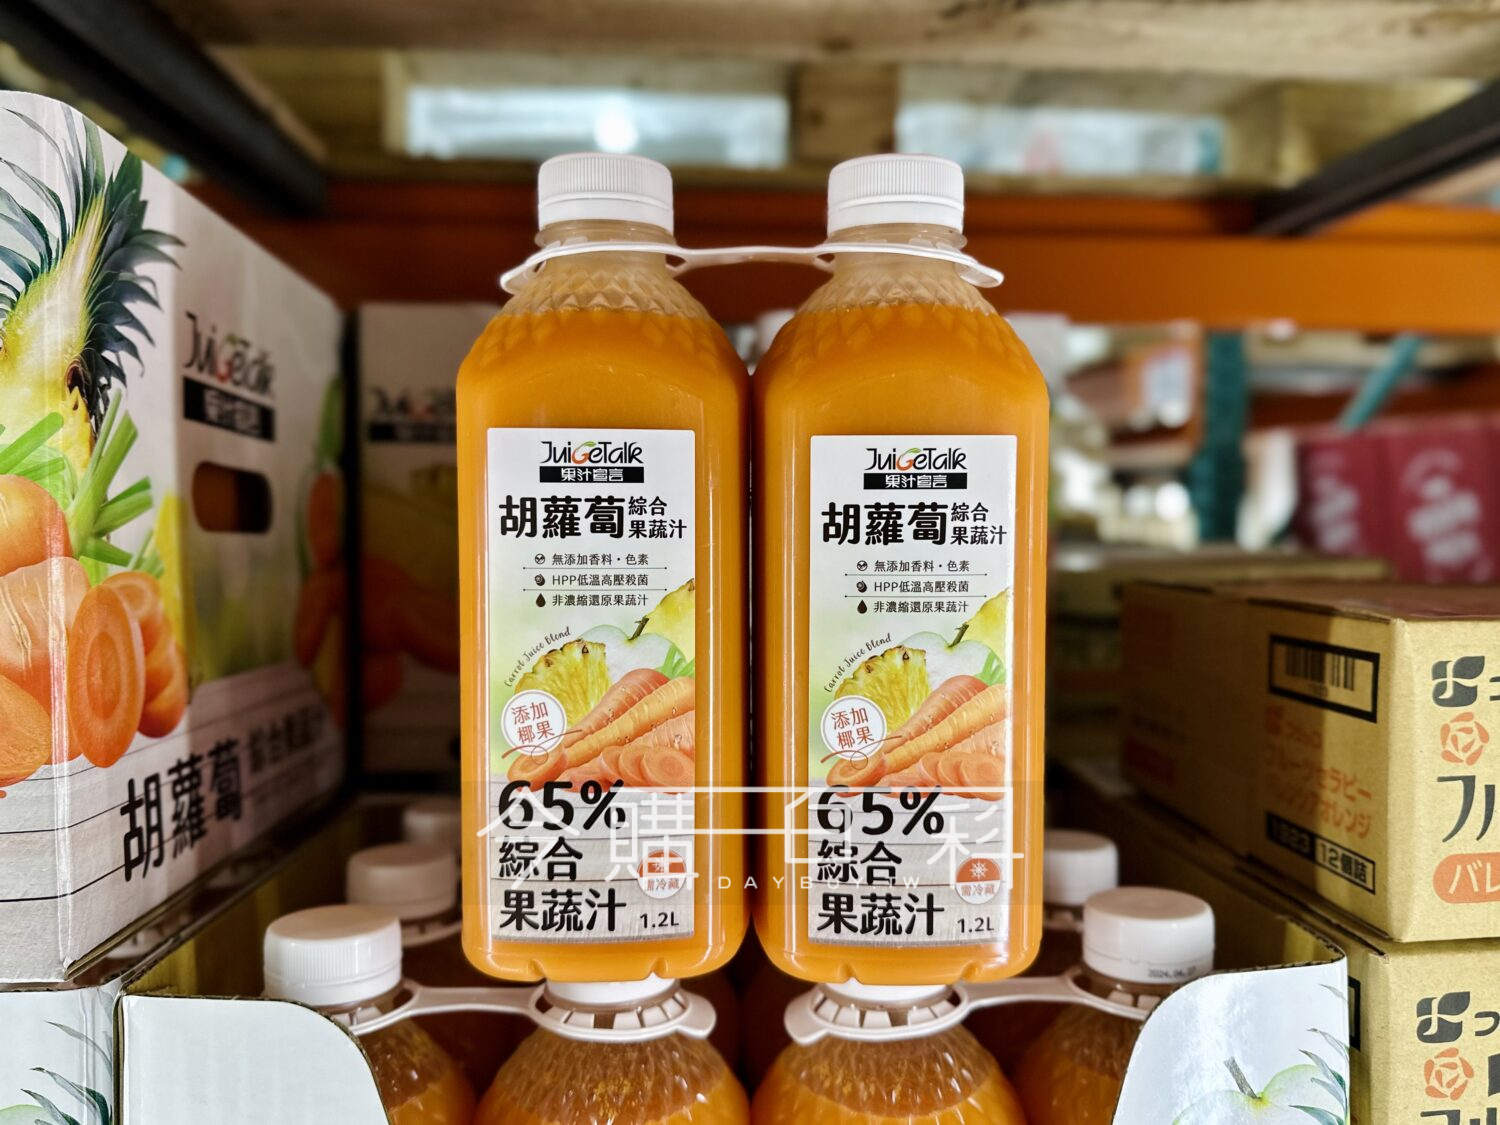 JUICE TALK 果汁宣言胡蘿蔔綜合果蔬汁 #143891